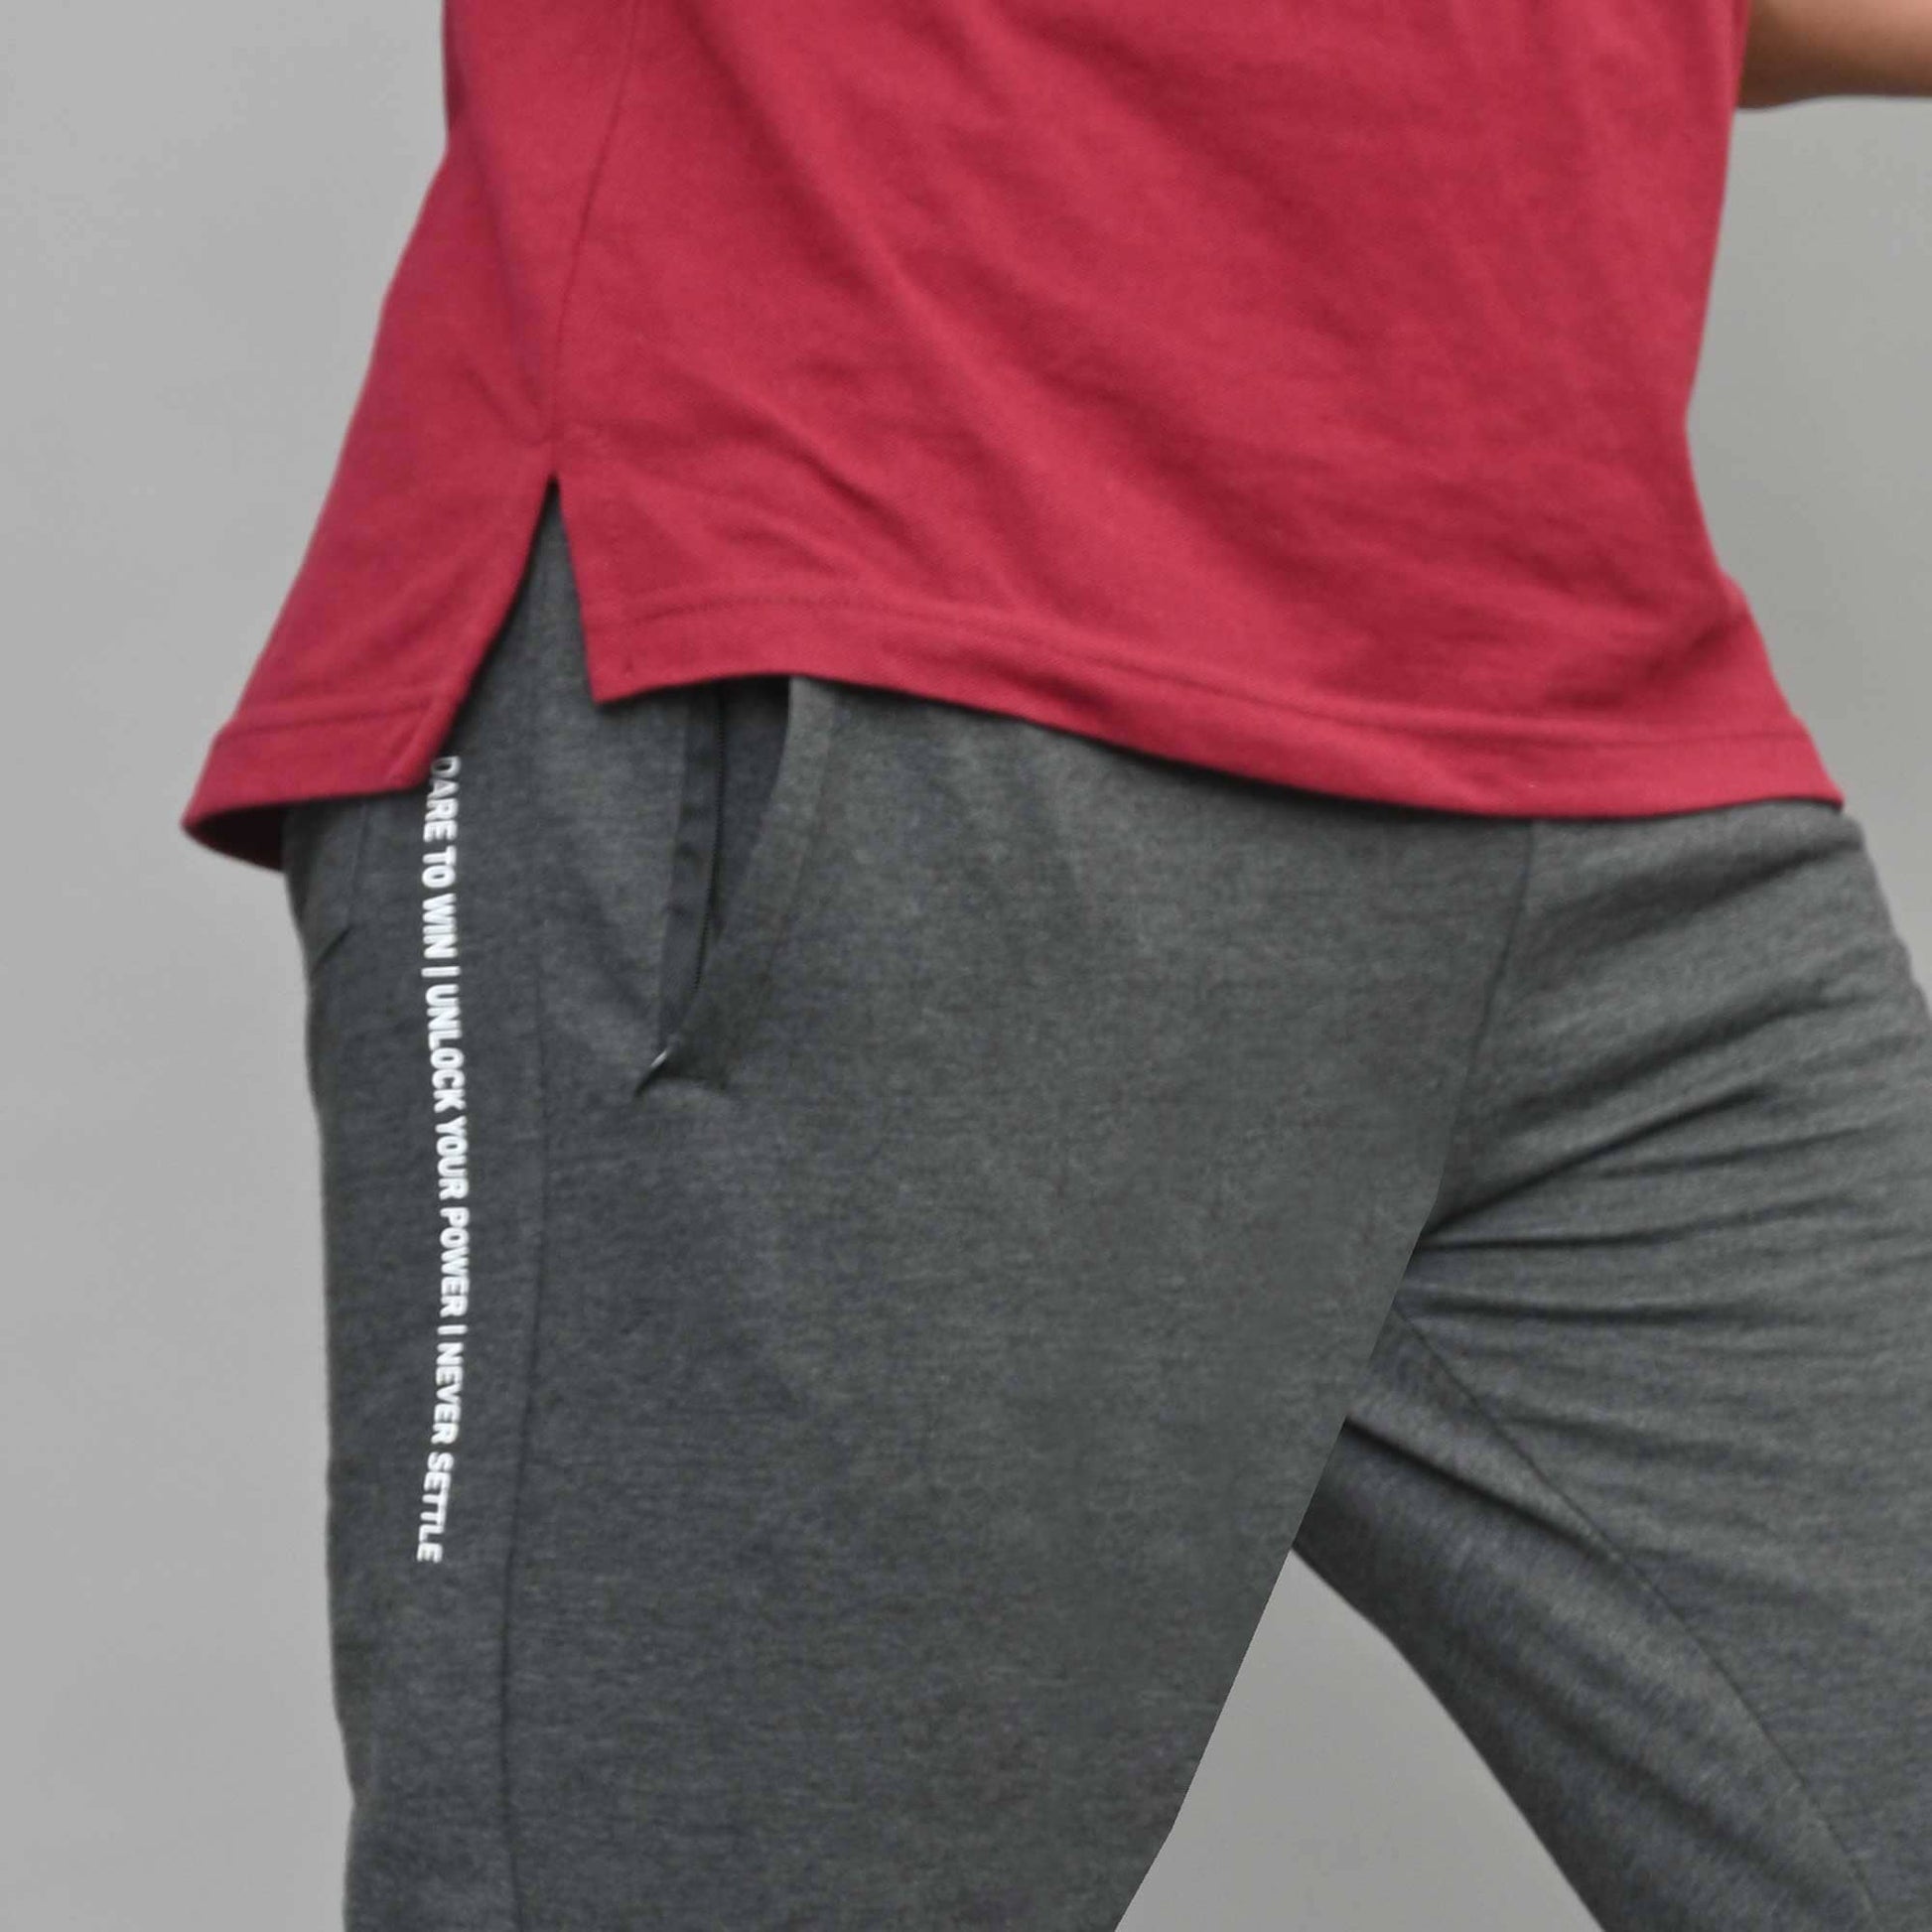 Polo Republica Men's Essentials Slim-Fit Joggers Charcoal